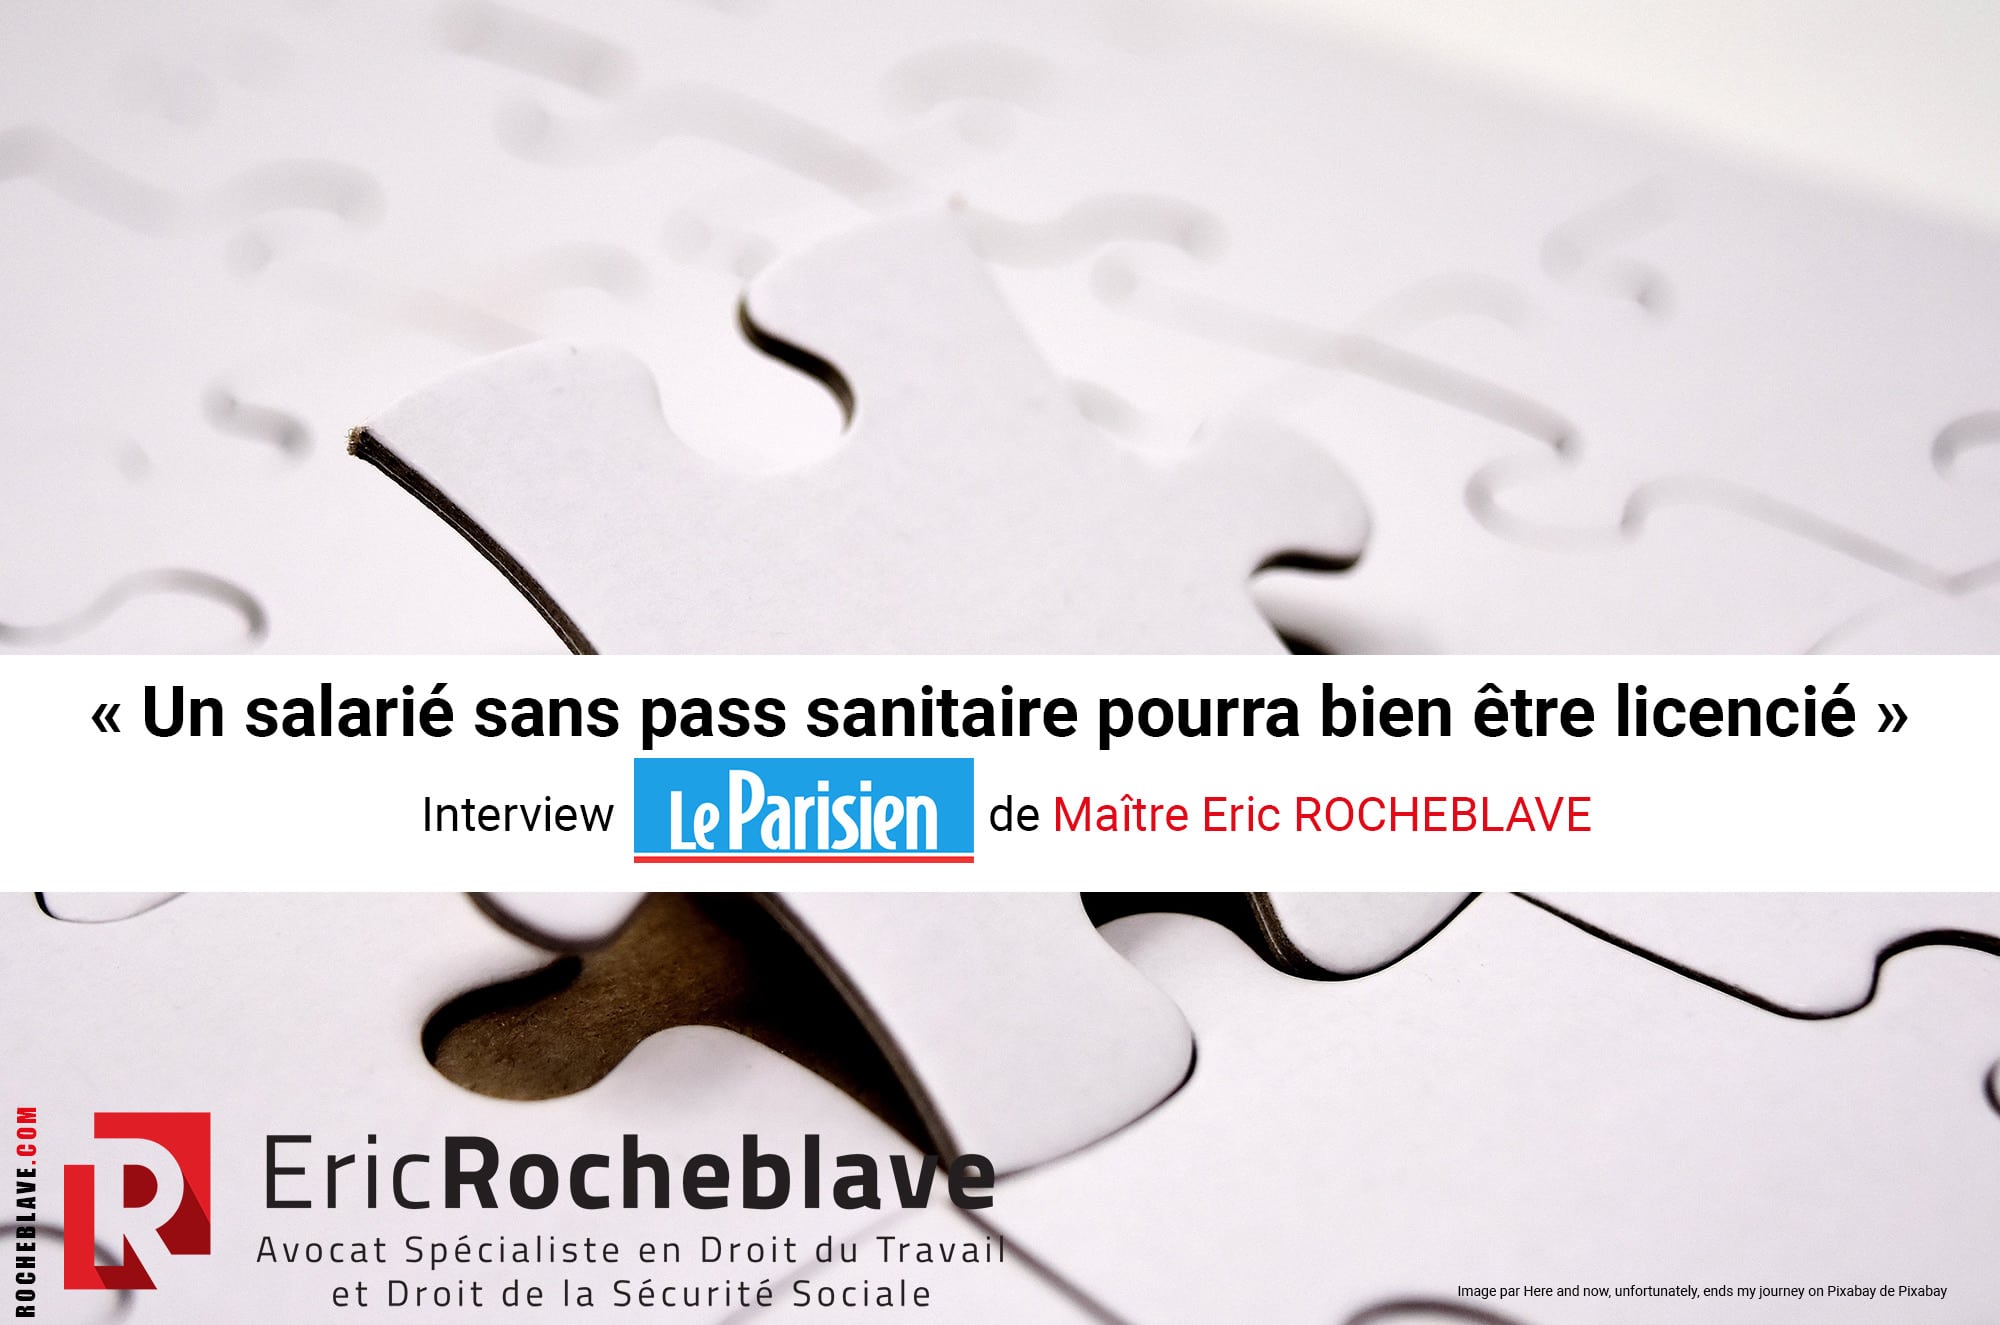 « Un salarié sans pass sanitaire pourra bien être licencié » Interview Le Parisien de Maître Eric ROCHEBLAVE